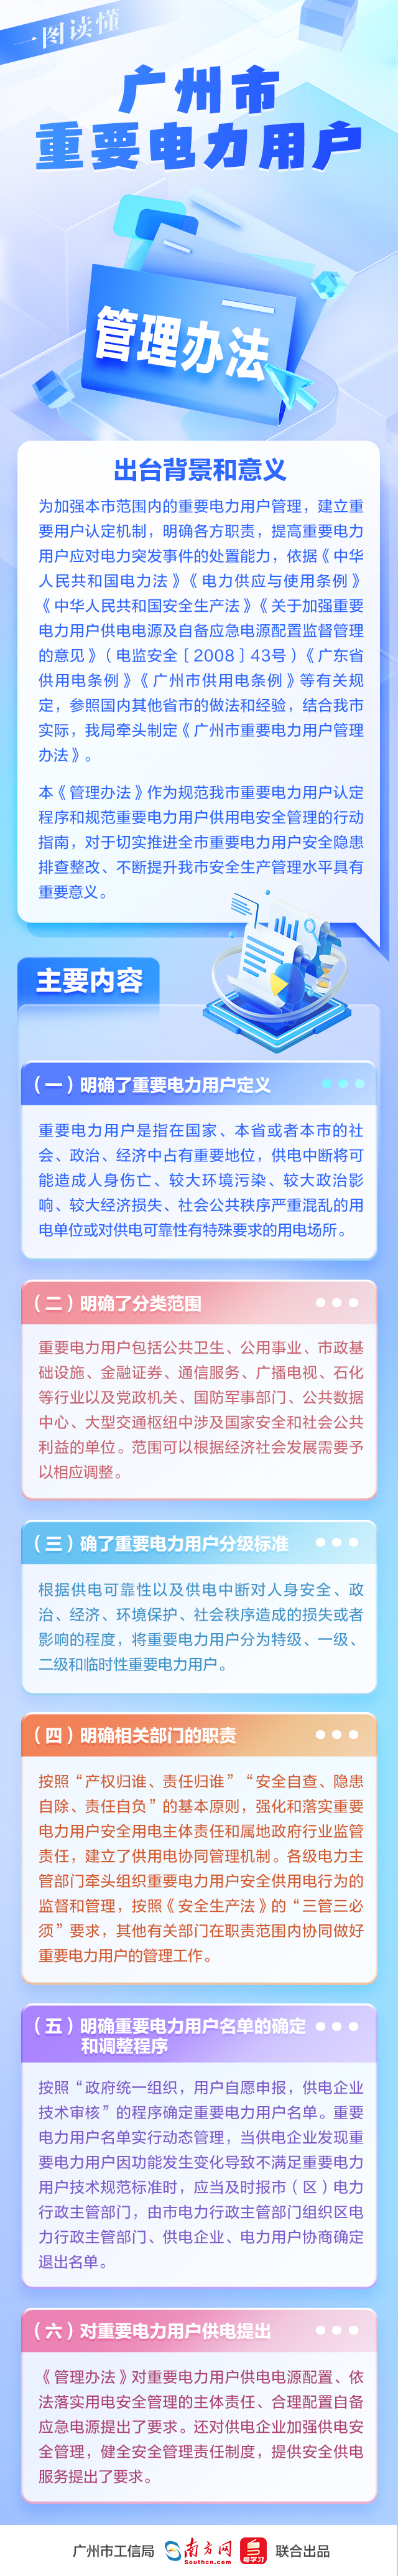 一图读懂《广州市重要电力用户管理办法》.jpg